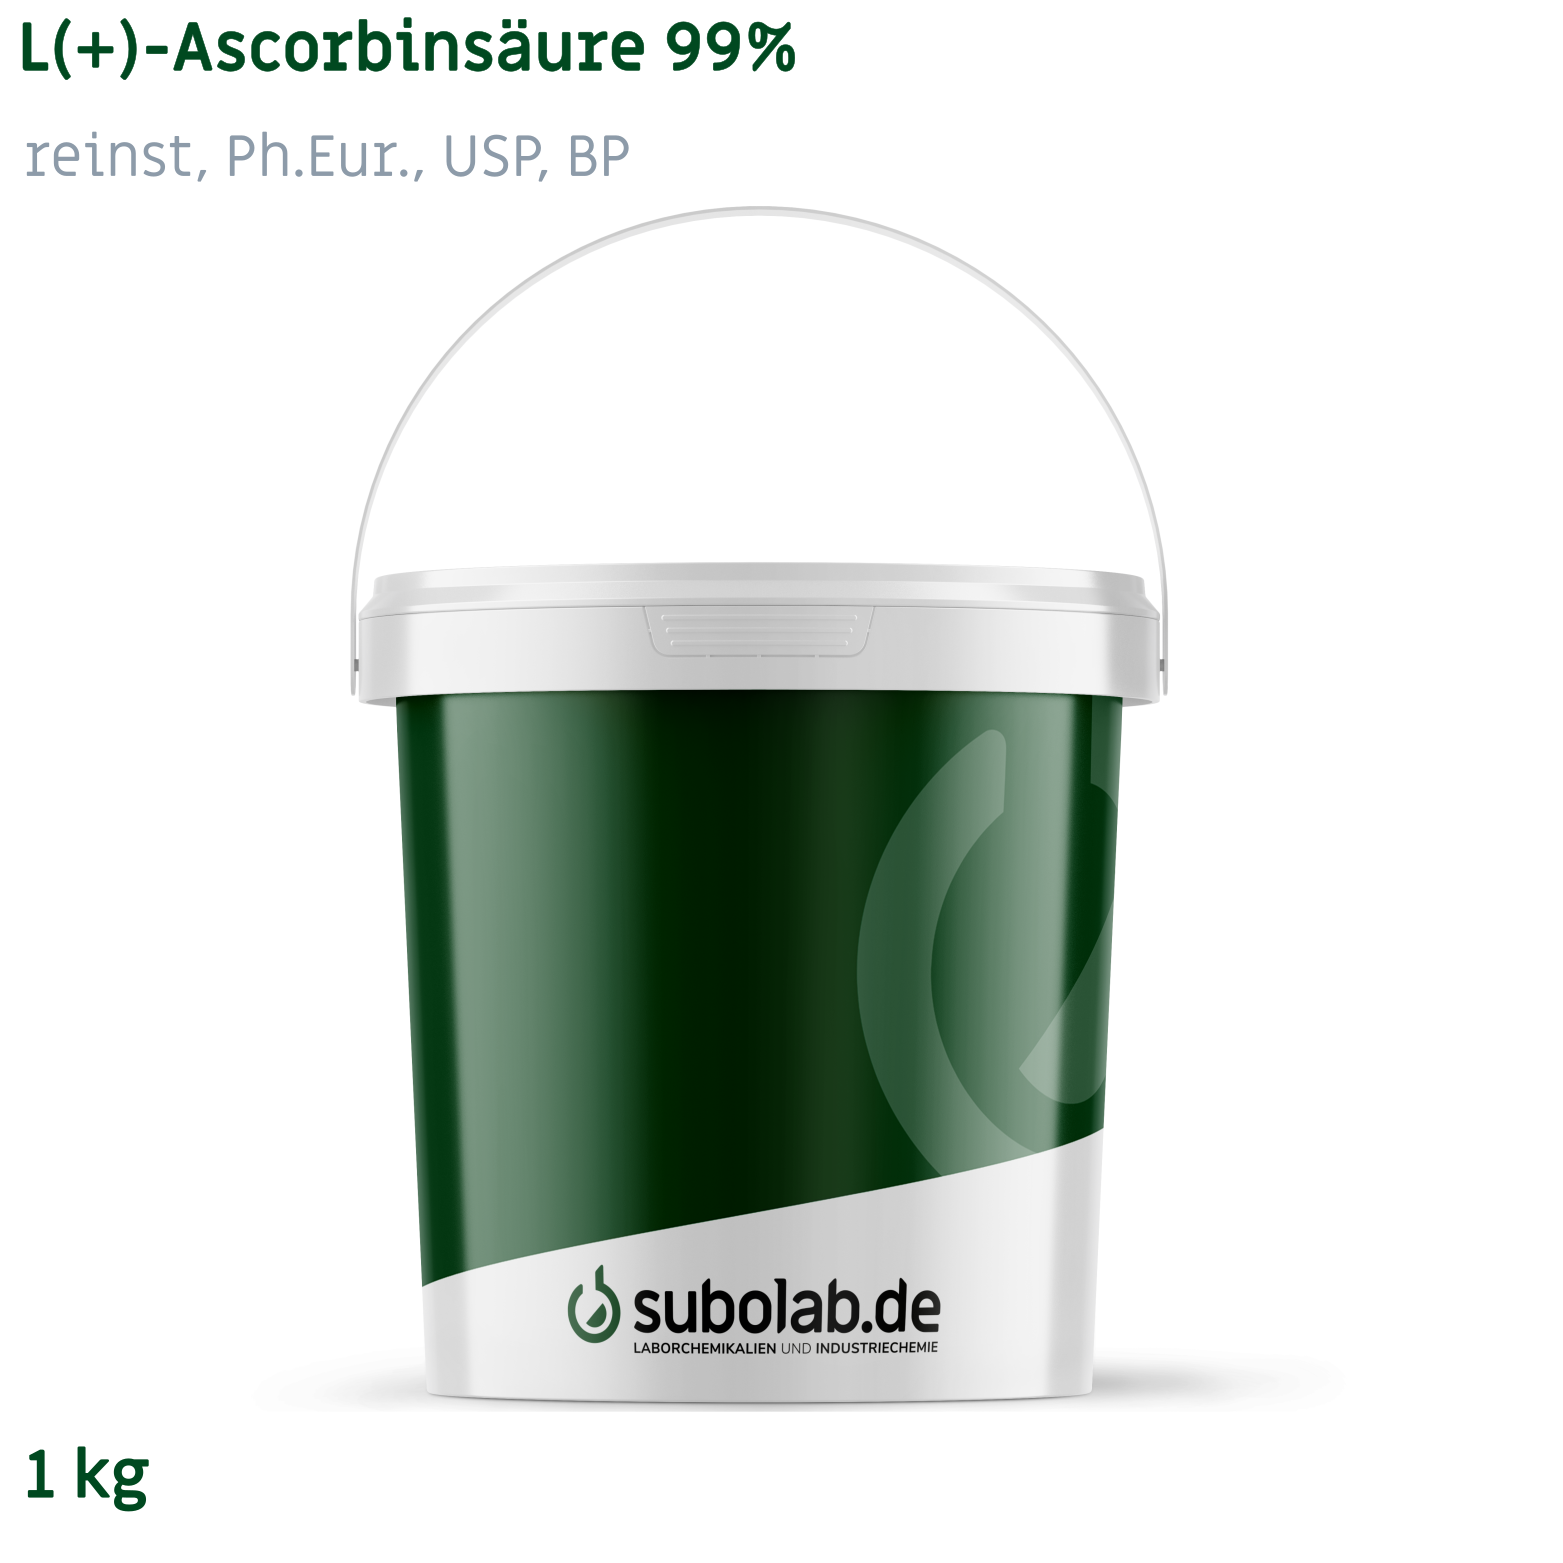 Bild von L(+)-Ascorbinsäure 99% reinst, Ph.Eur., USP, BP (1 kg)